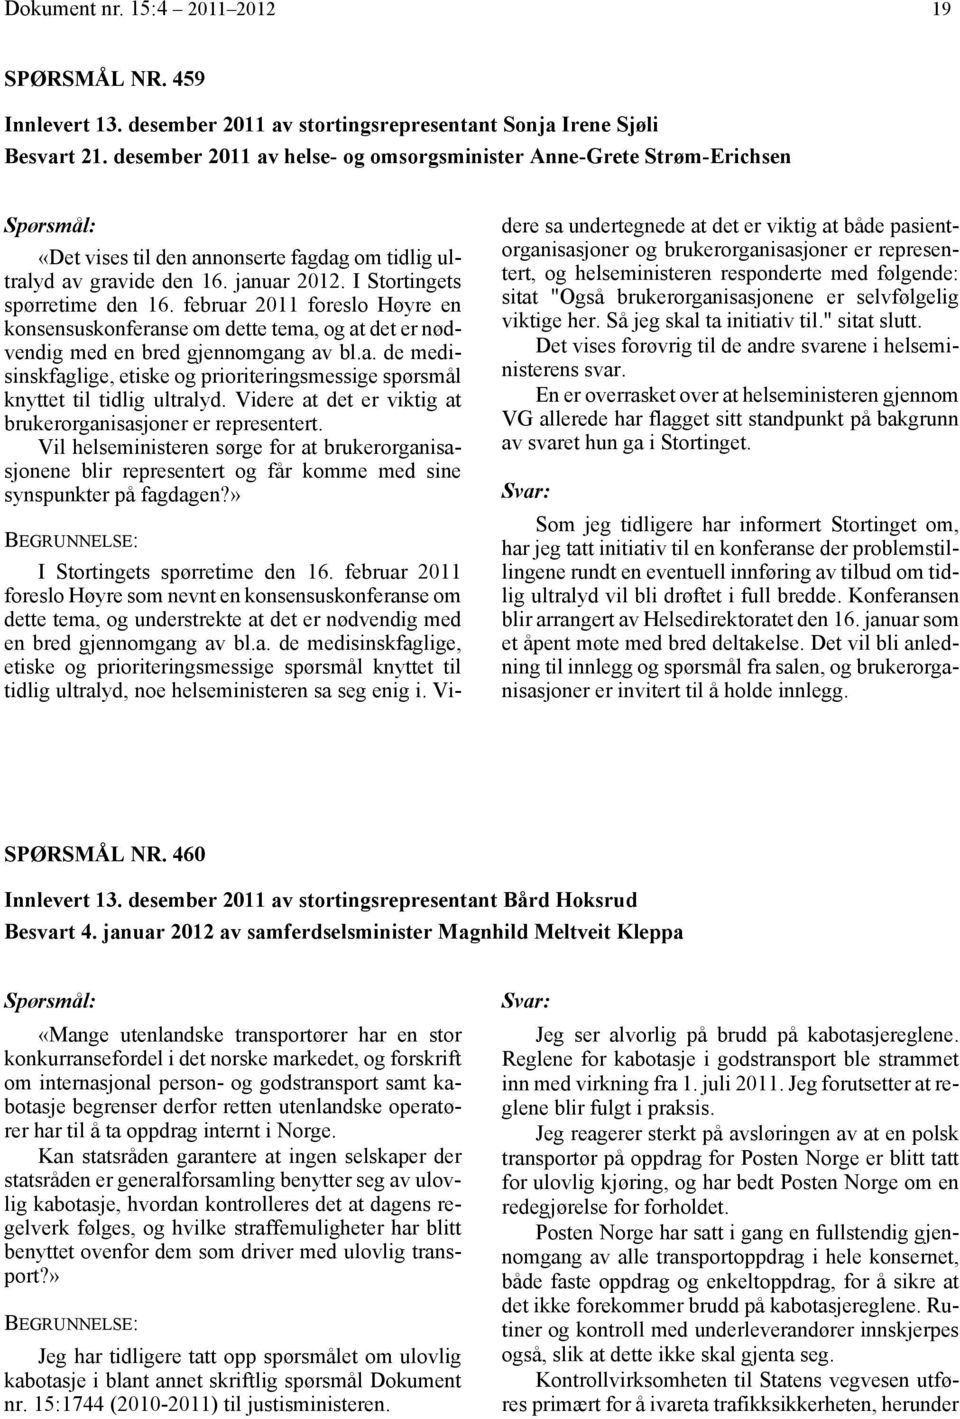 februar 2011 foreslo Høyre en konsensuskonferanse om dette tema, og at det er nødvendig med en bred gjennomgang av bl.a. de medisinskfaglige, etiske og prioriteringsmessige spørsmål knyttet til tidlig ultralyd.